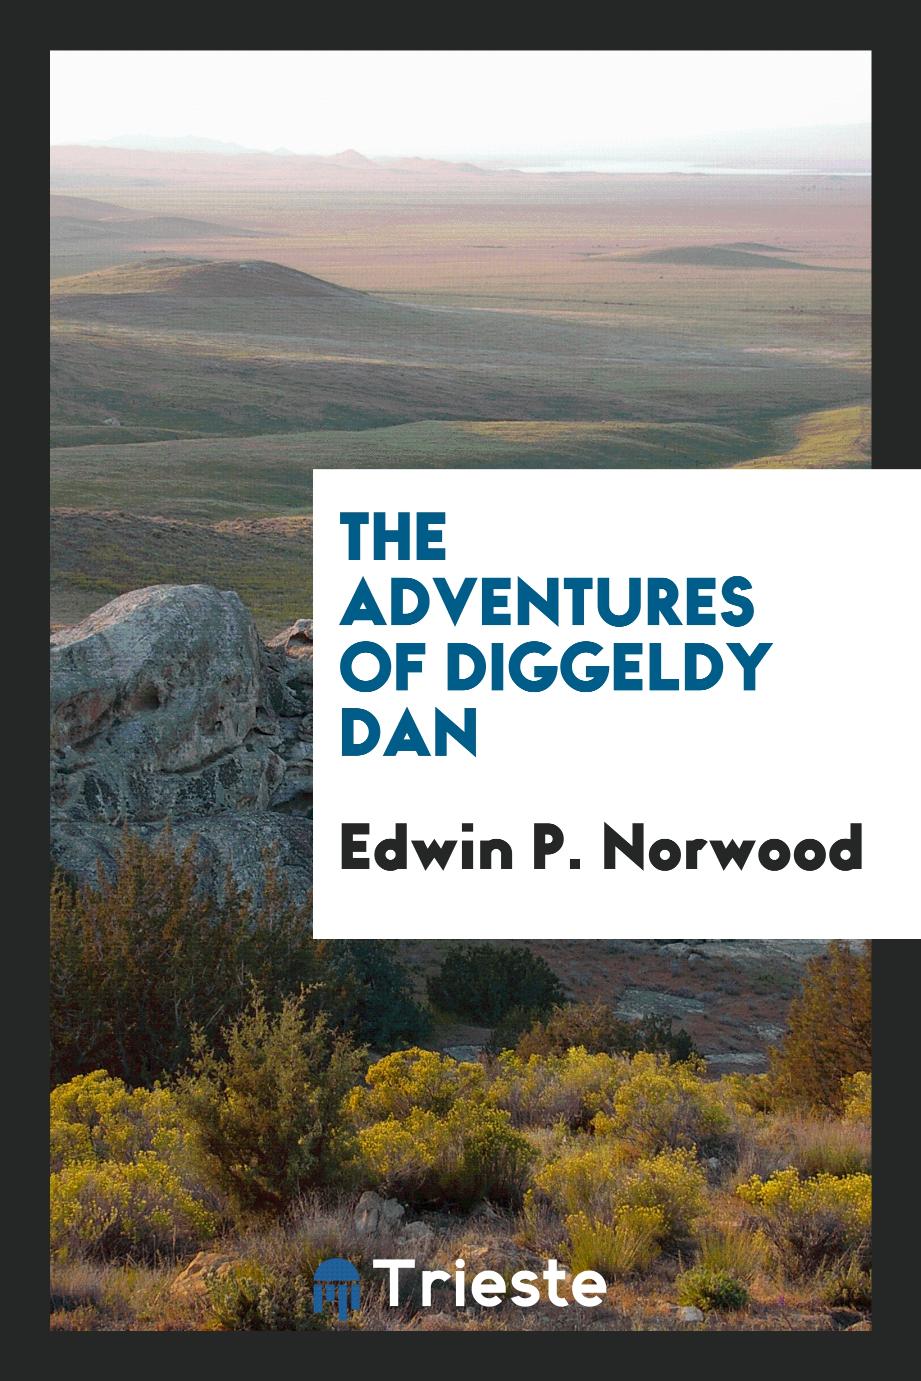 The adventures of Diggeldy Dan